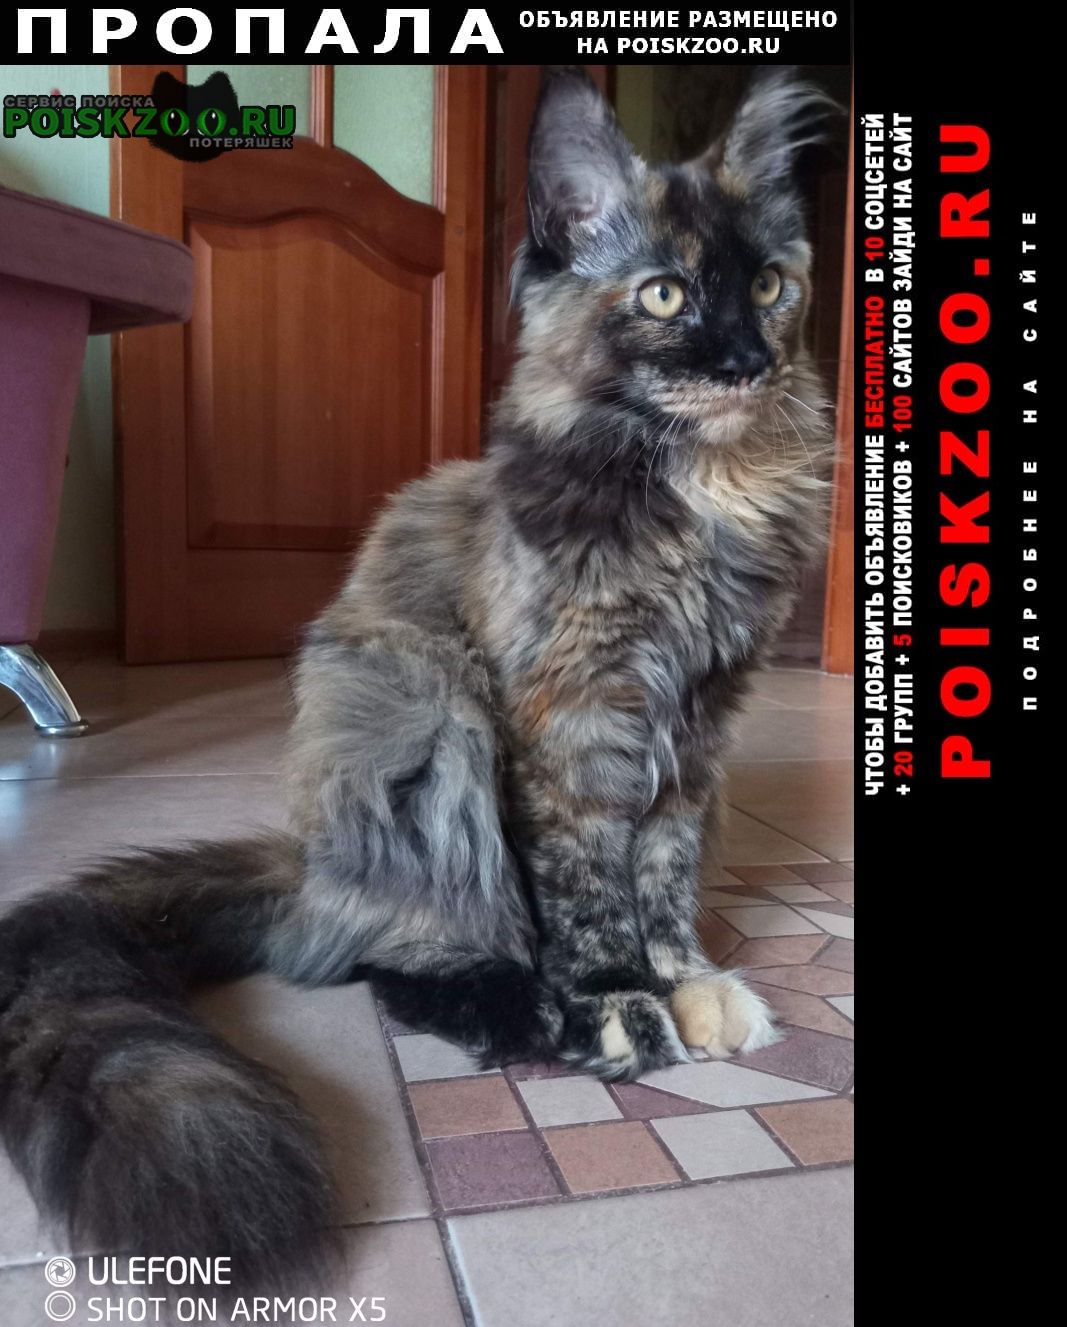 Пропала кошка потерялась Санкт-Петербург